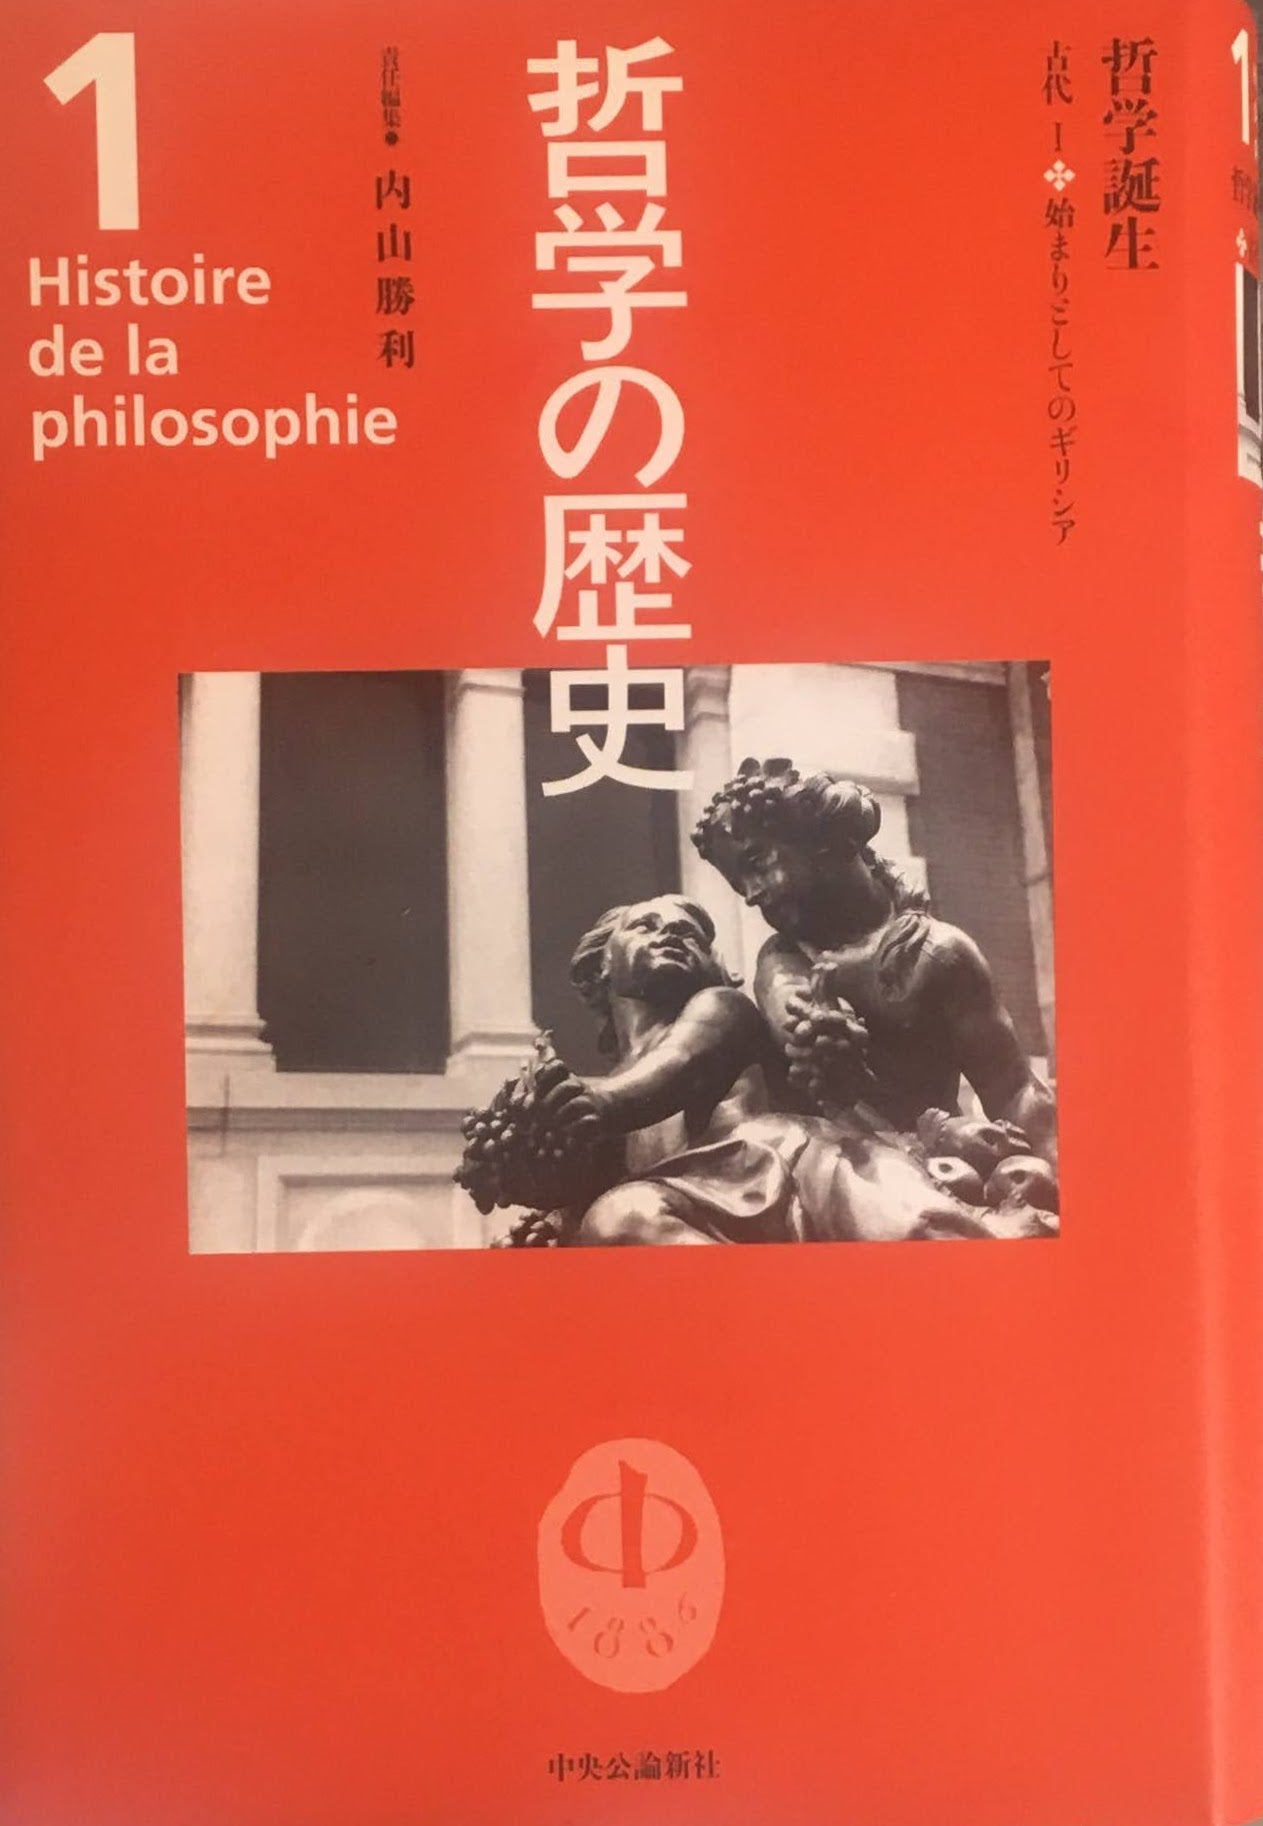 哲学の歴史 別巻 (哲学と哲学史)と哲学の歴史1〜12巻、全13巻 - www 